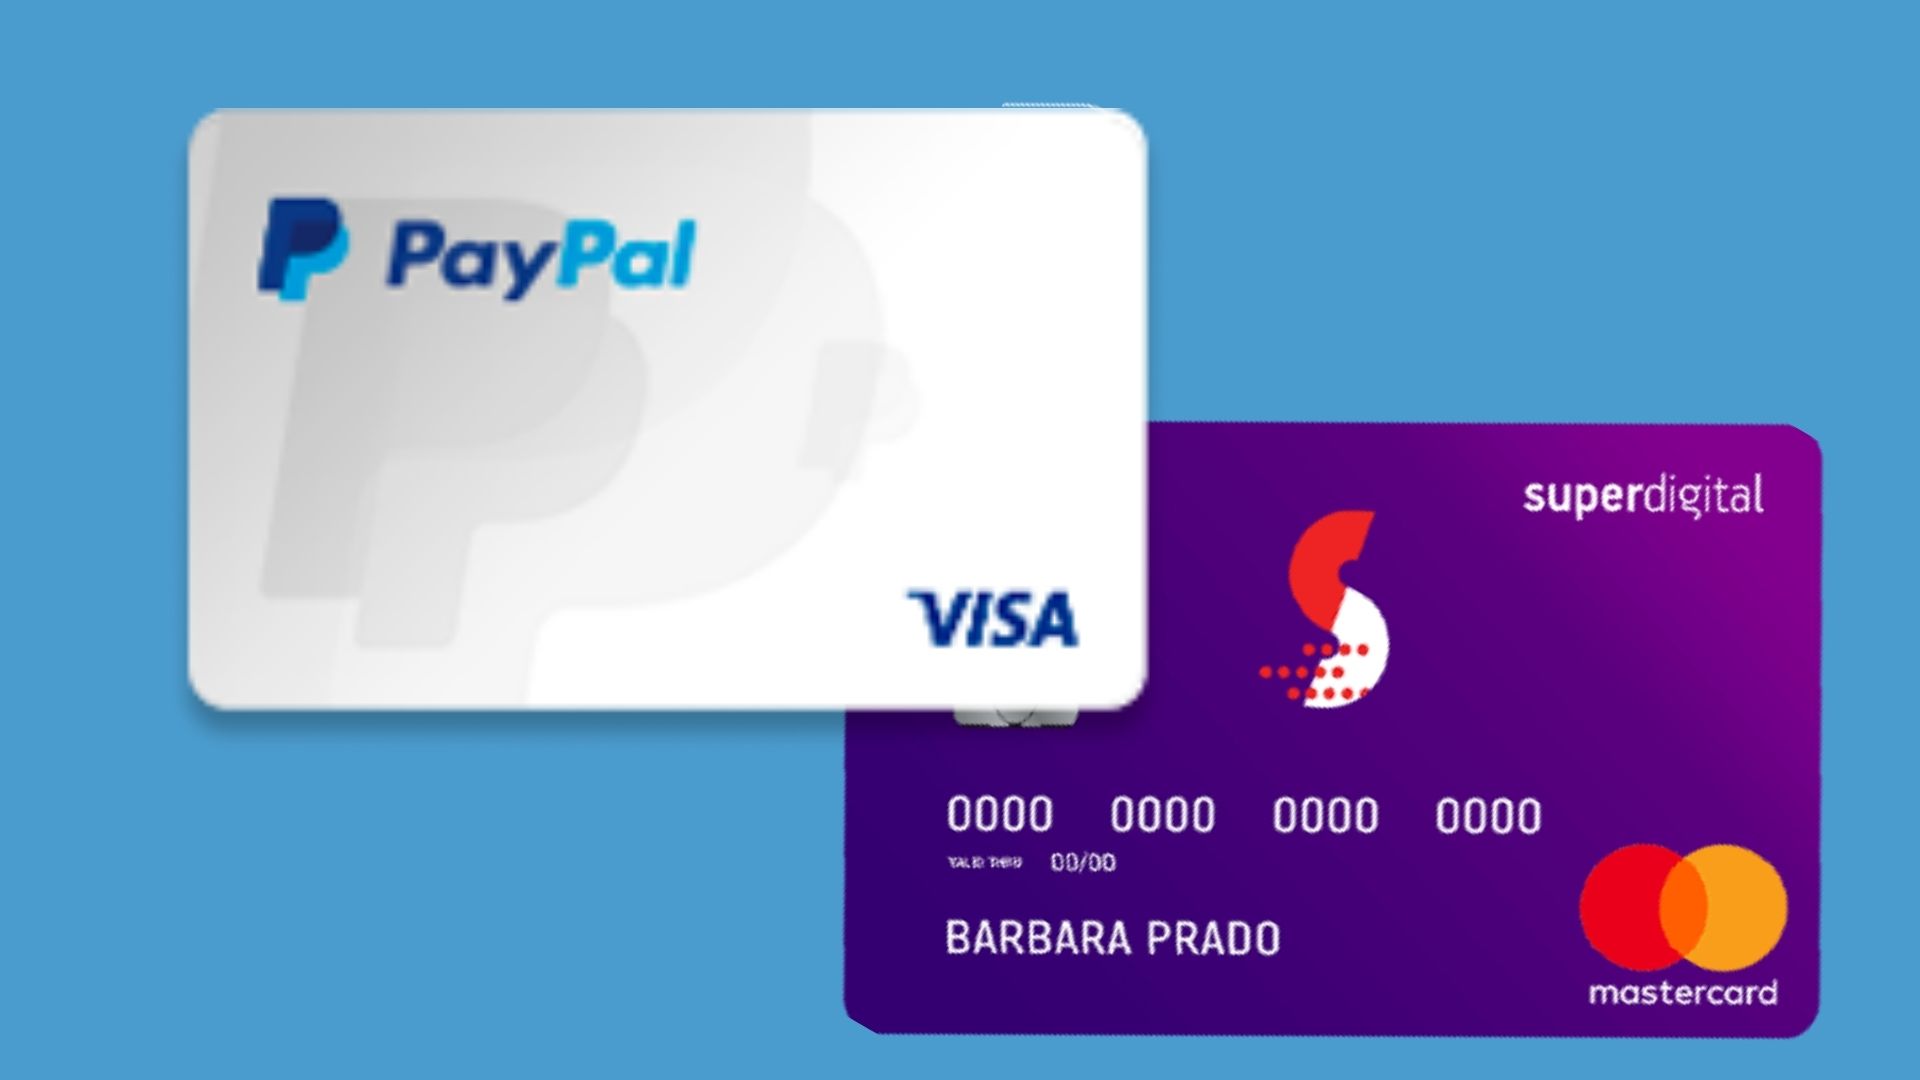 Cartão pré-pago Digital ou Superdigital? Fontes: Paypal e Superdigital.